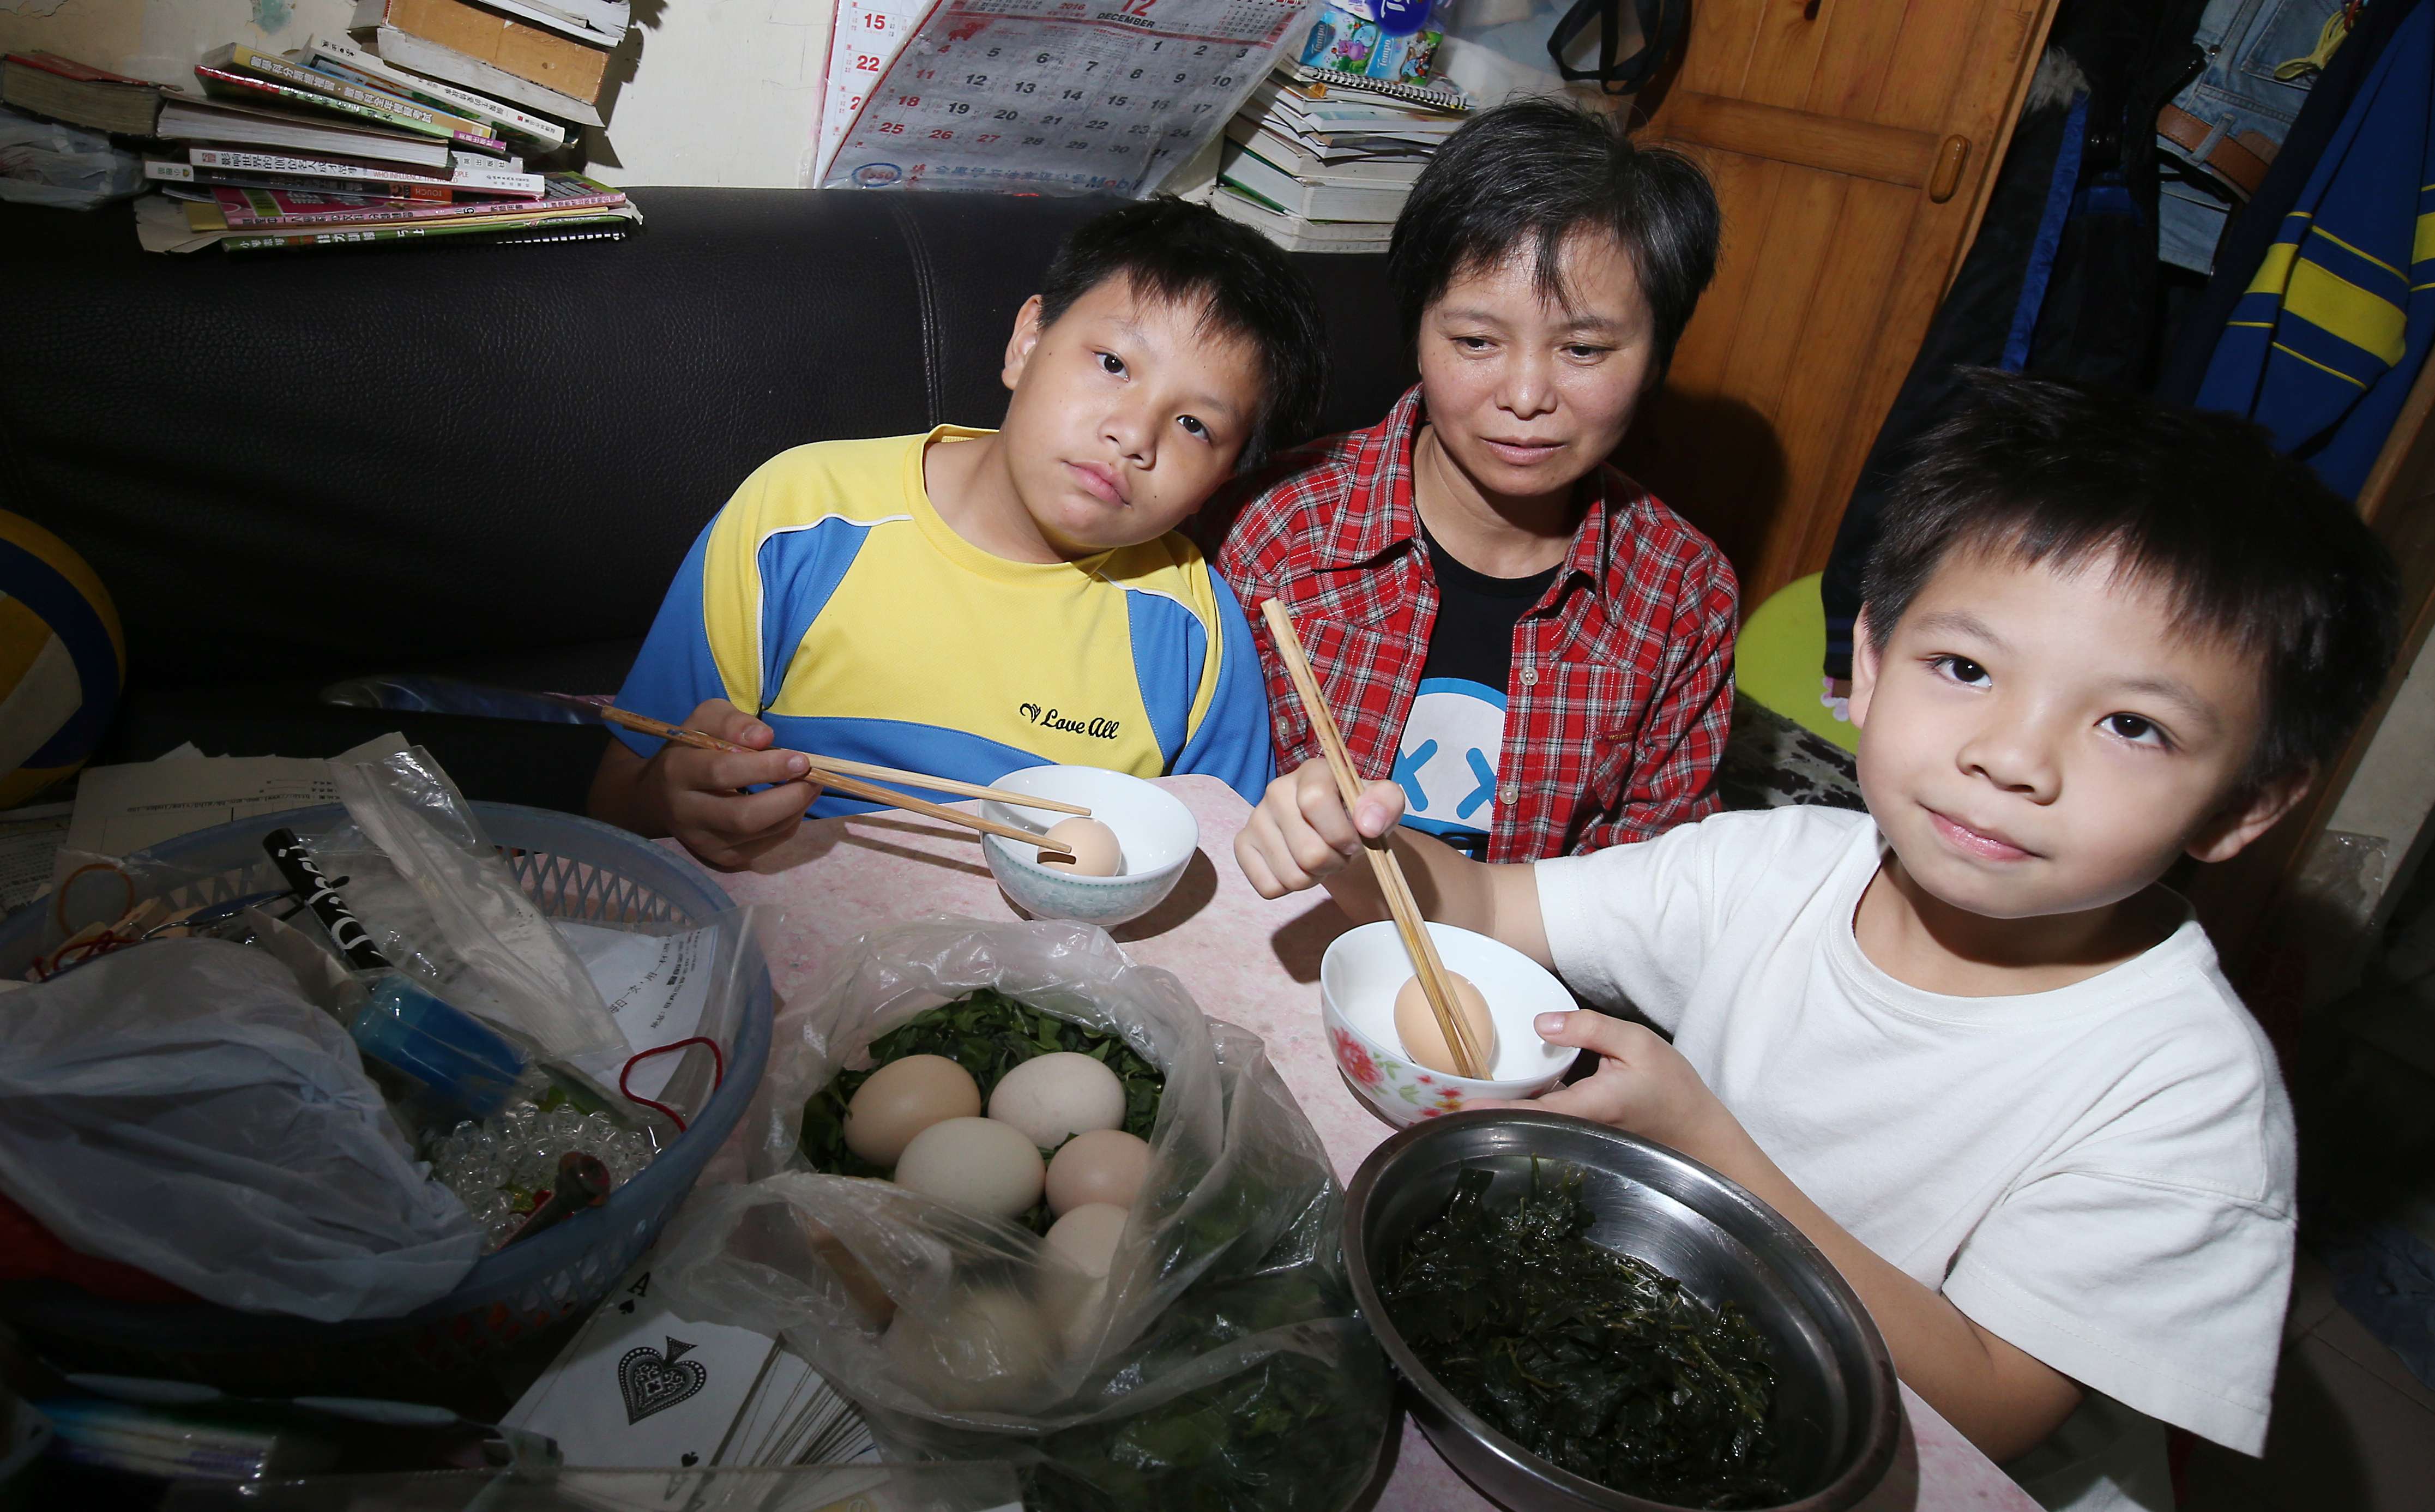 Li Ching-wan, 12; his mother Li Yan-ling; and his brother Tang Chung-kai, 9, at home in Sham Shui Po. Photo: David Wong